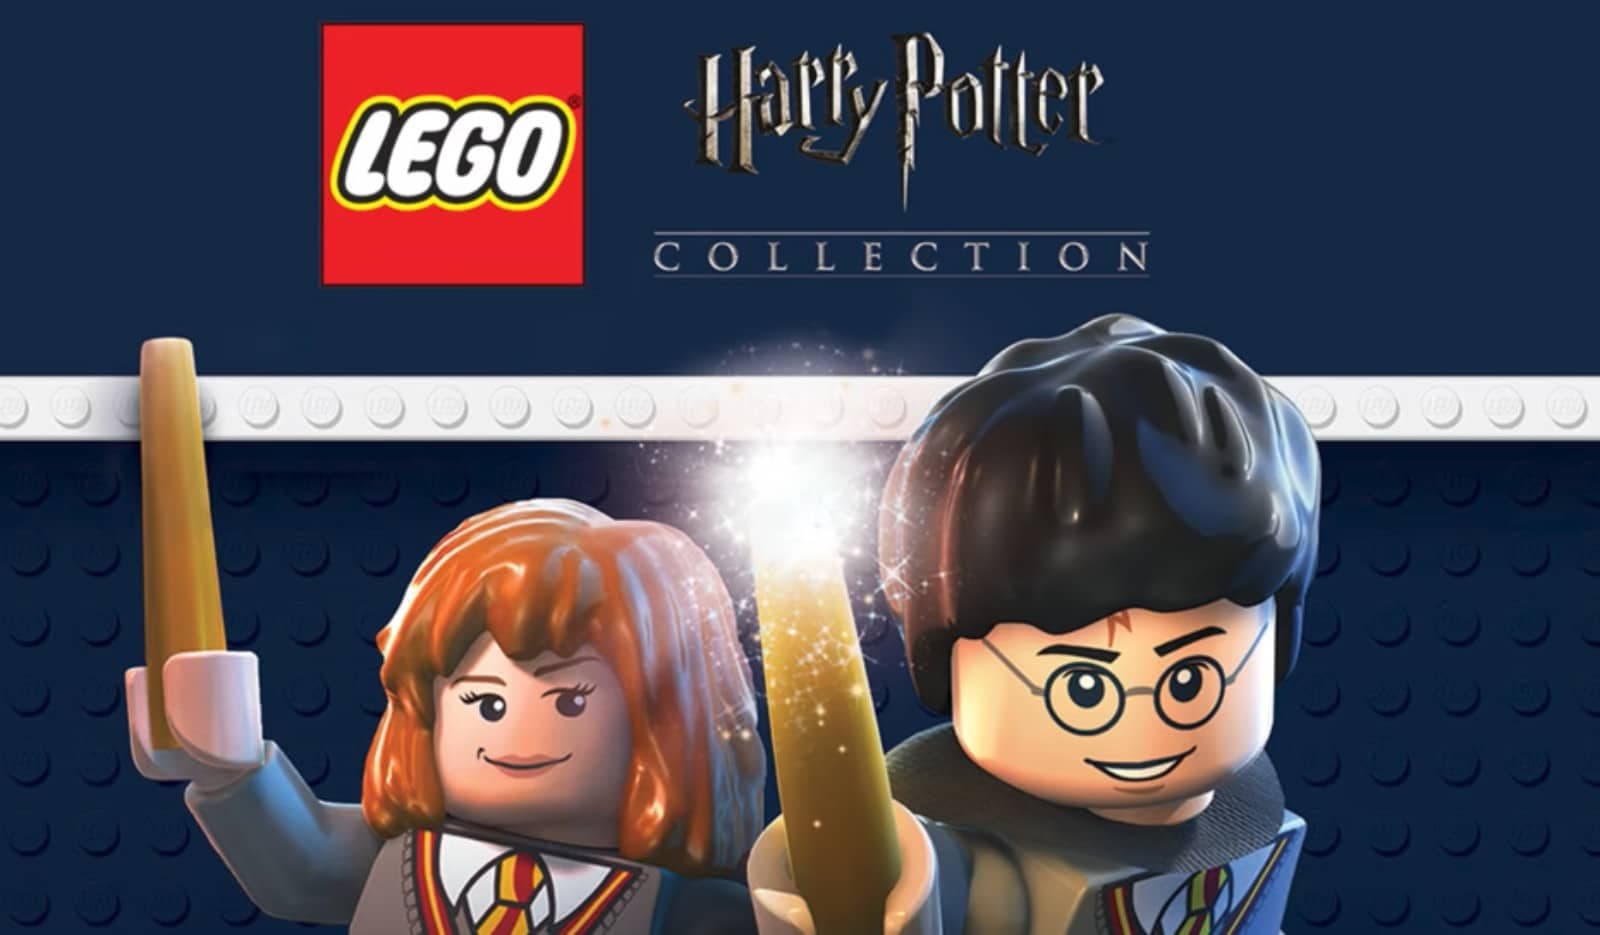 LEGO Harry Potter Collection está casi regalado gracias a esta oferta mágica